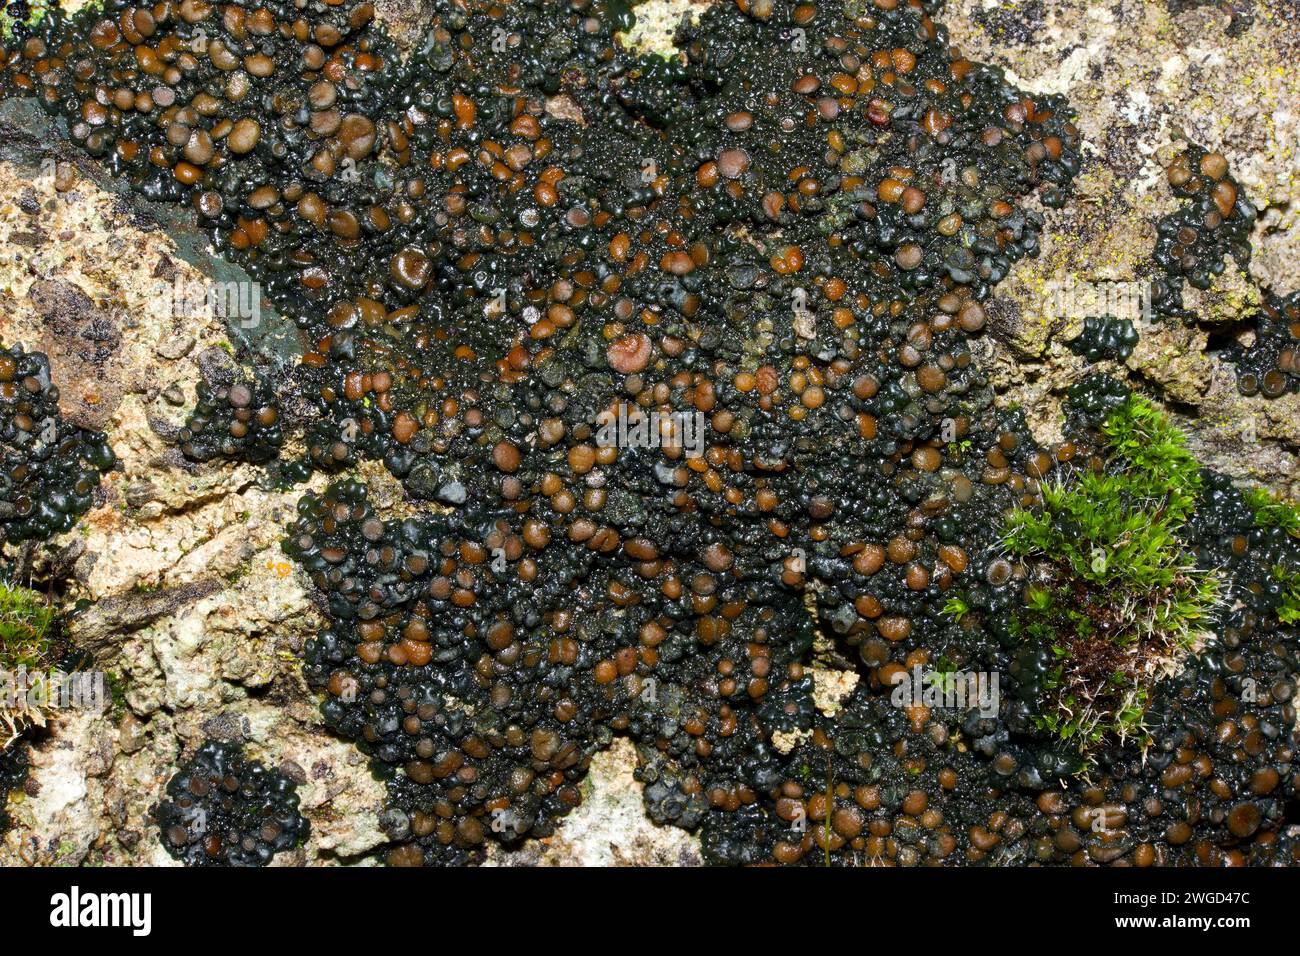 Enchylium tenax (lichen gelatina) si trova spesso su terreni calcarei e mortaio. Si trova nelle regioni artiche e temperate dell'emisfero settentrionale. Foto Stock